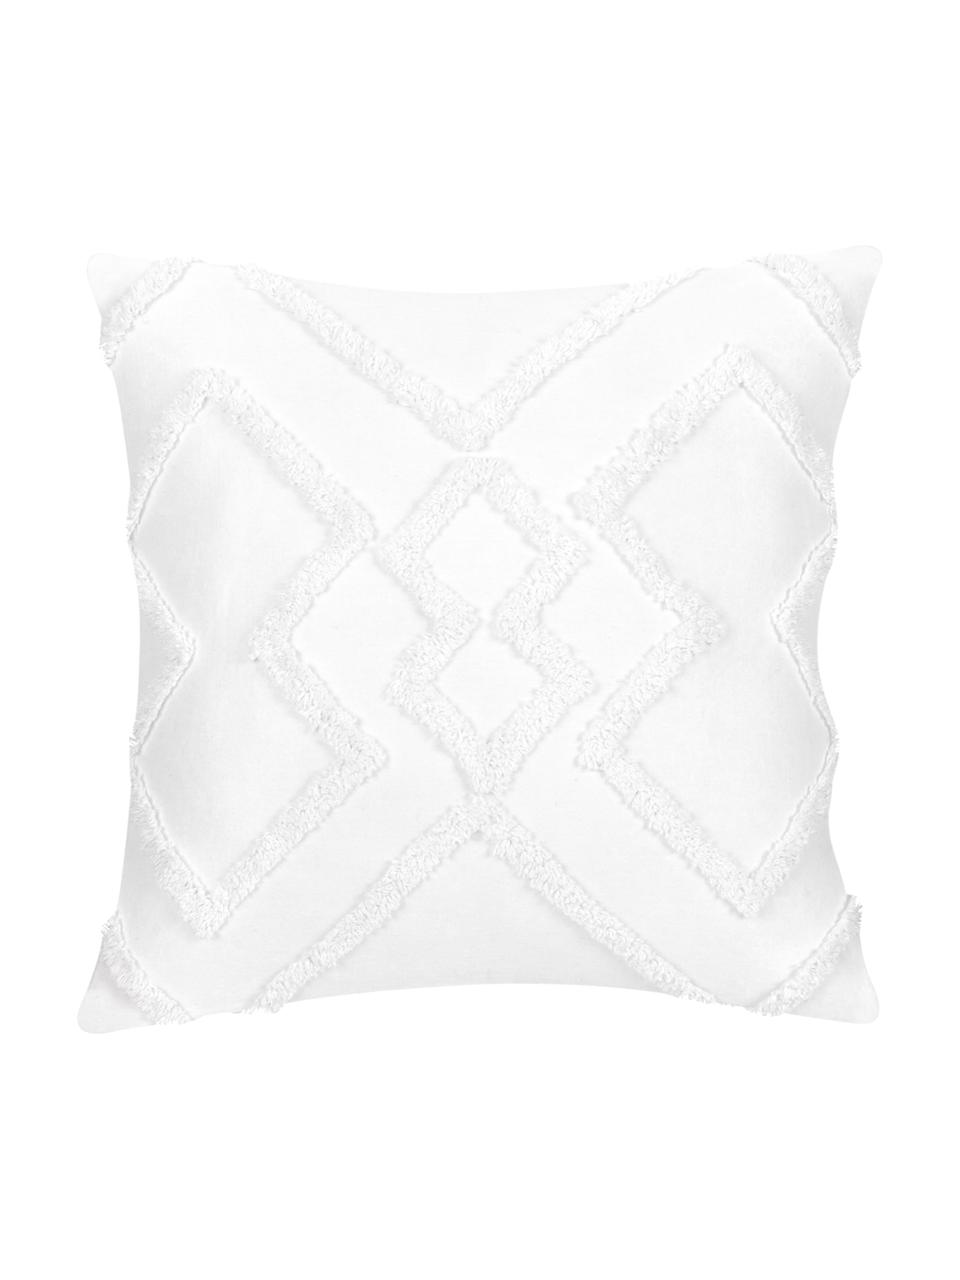 Comfort Beddings Cotone Dimensioni 65 x 65 cm Colore: Bianco Confezione da 2 Federe copricuscino in 100% Cotone Egiziano a 450 Fili Decorative Square/Continental Blue 60cm x 60cm 